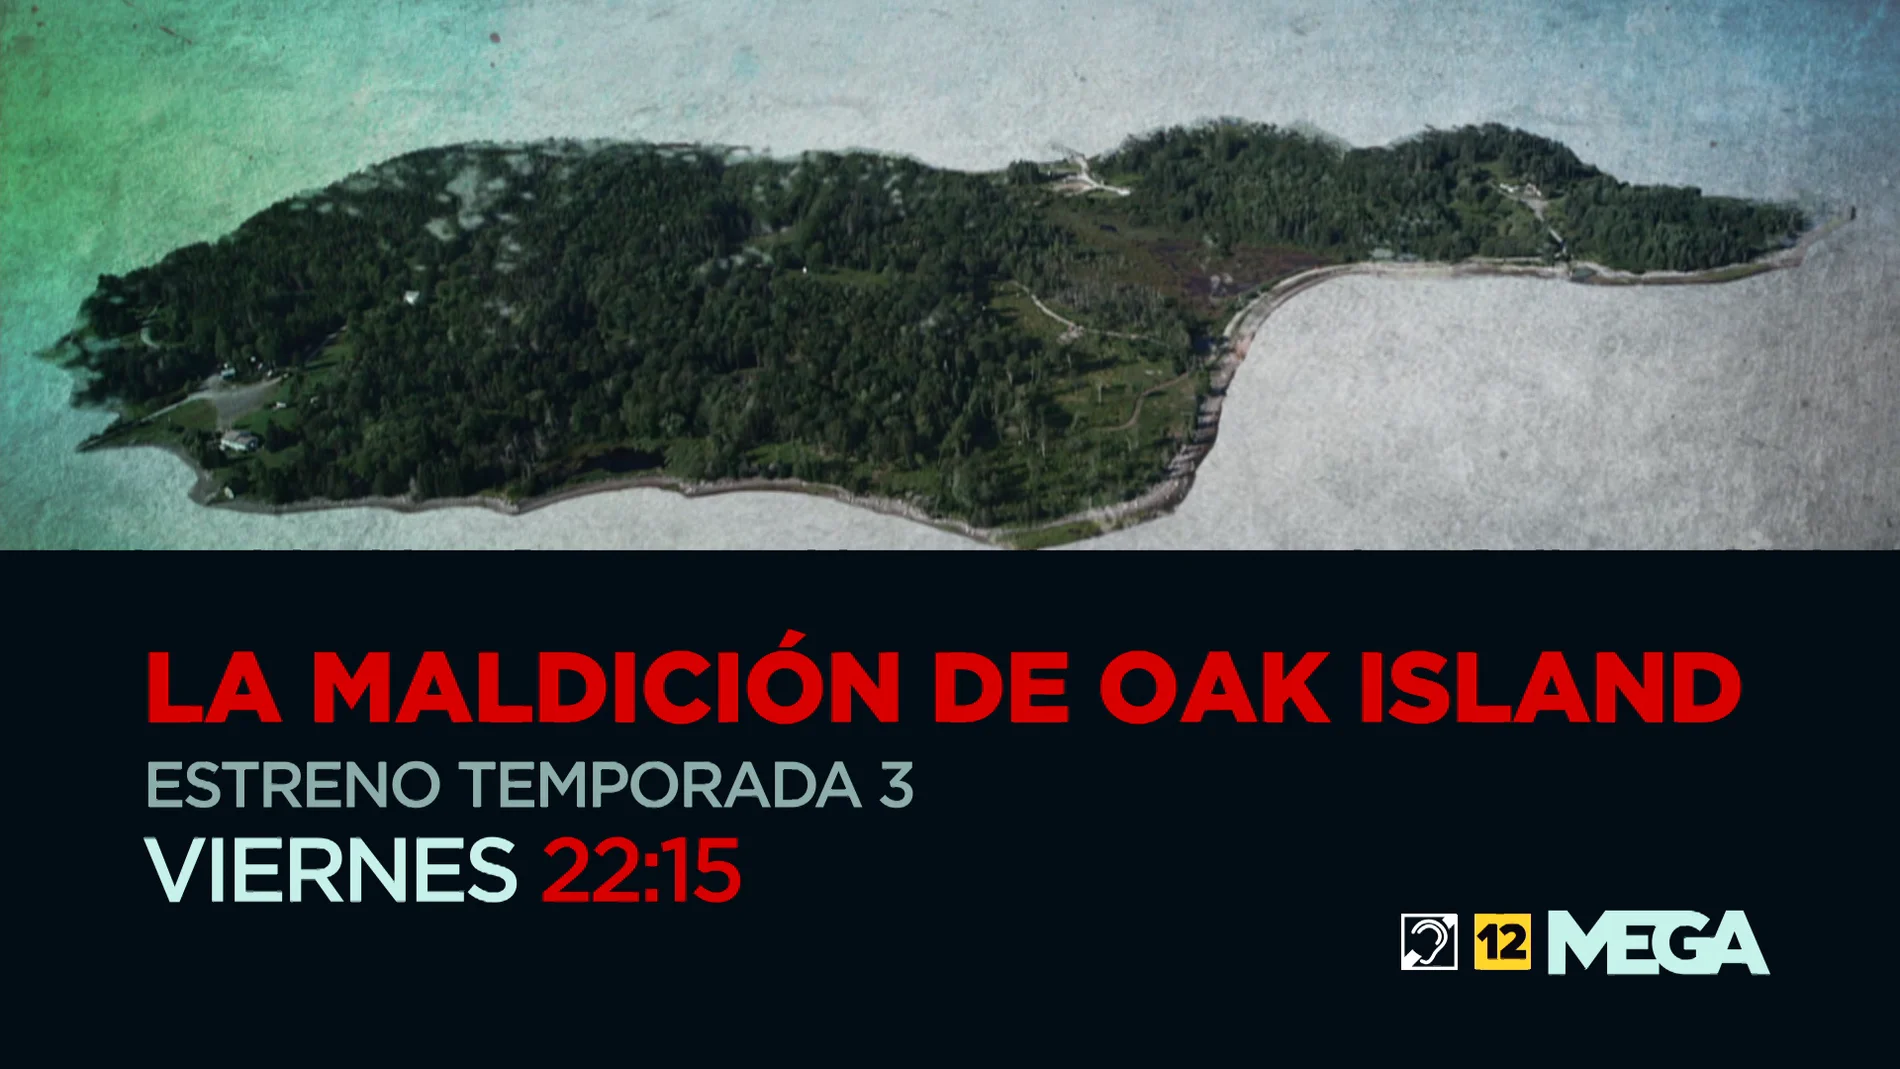 Este viernes, estreno de la tercera temporada de 'La maldición de Oak Island'